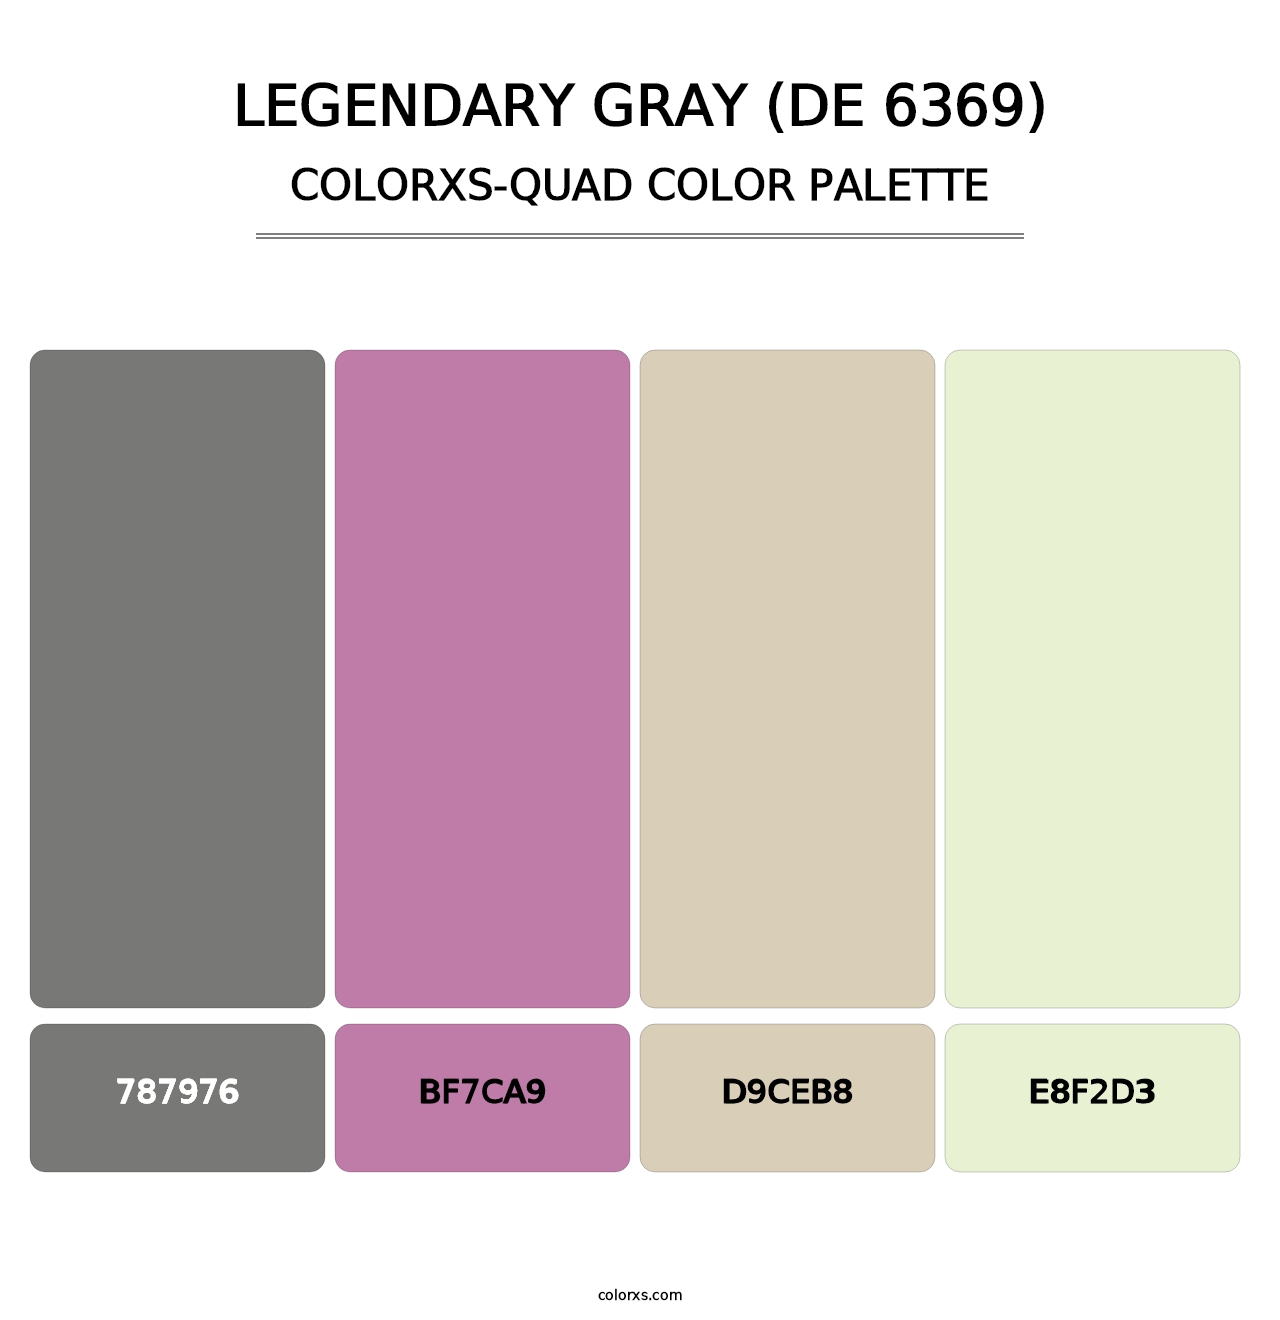 Legendary Gray (DE 6369) - Colorxs Quad Palette